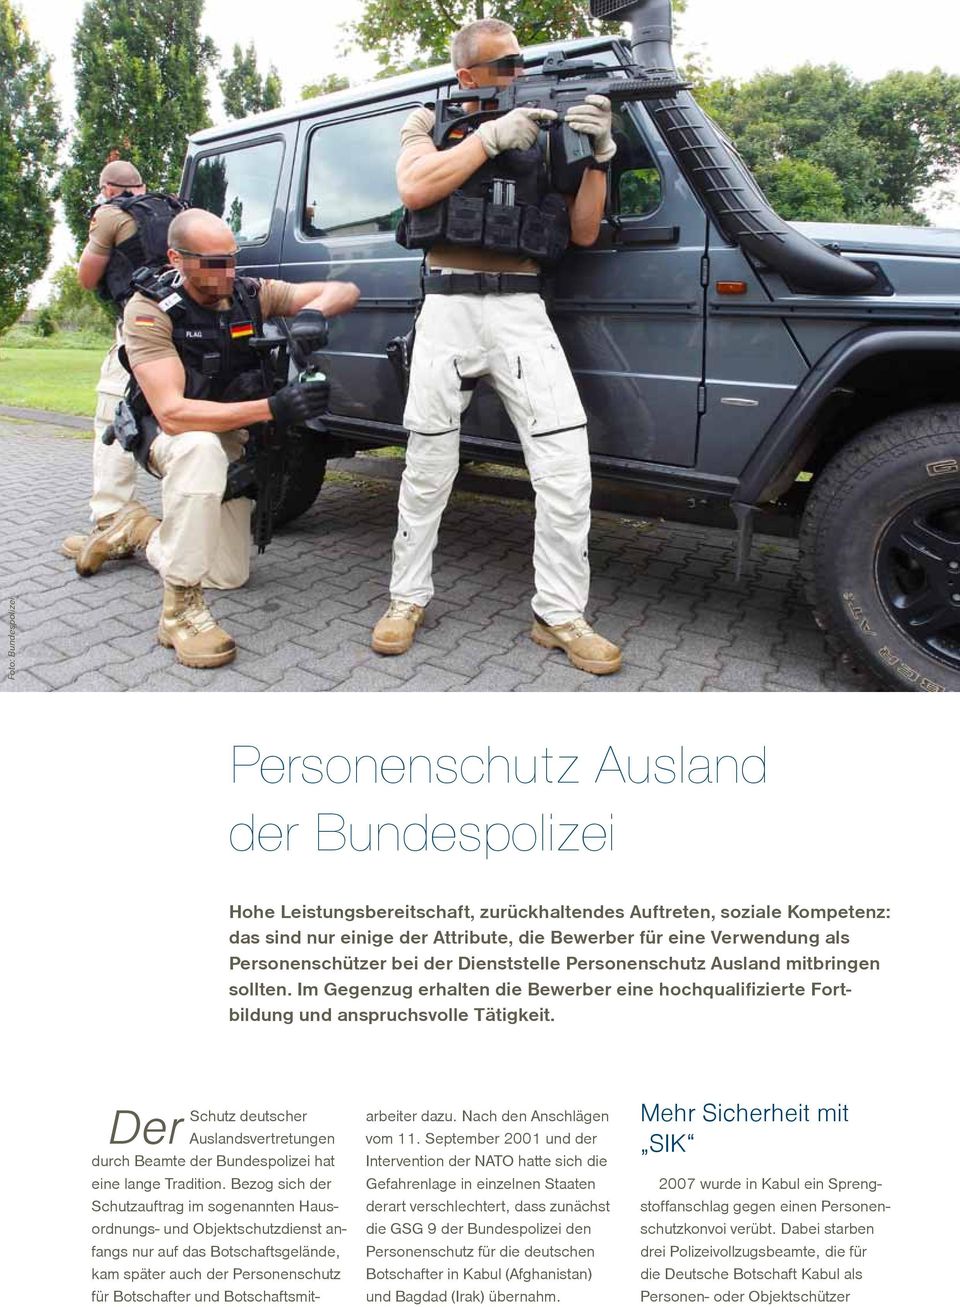 Der Schutz deutscher Auslandsvertretungen durch Beamte der Bundespolizei hat eine lange Tradition.